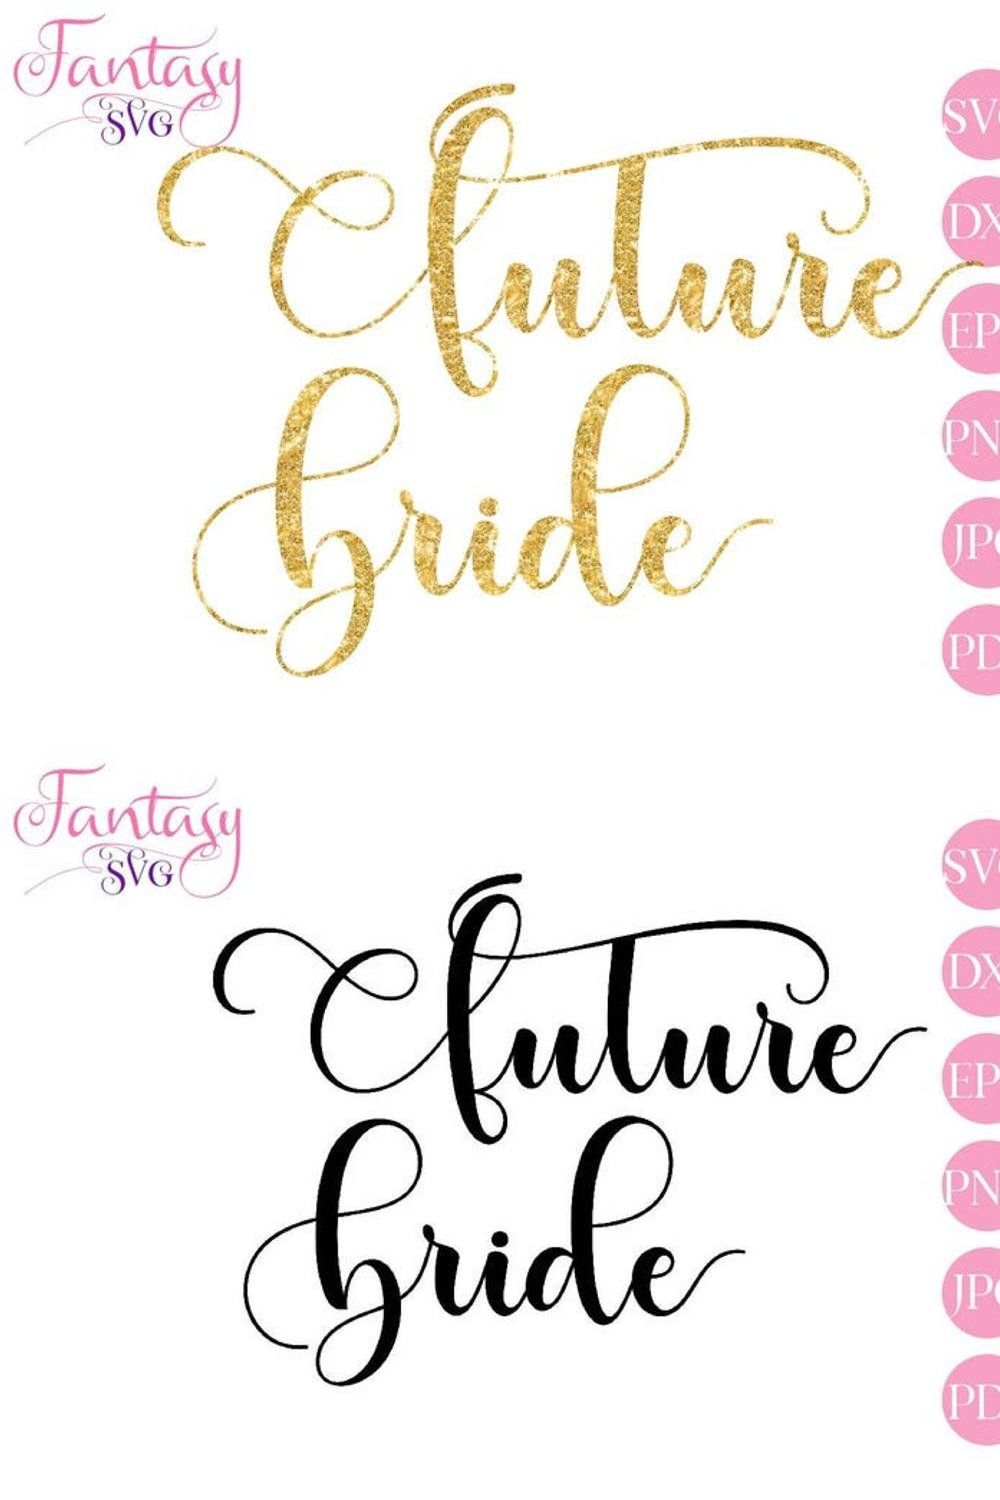 Future Bride - SVG Cut Files pinterest preview image.